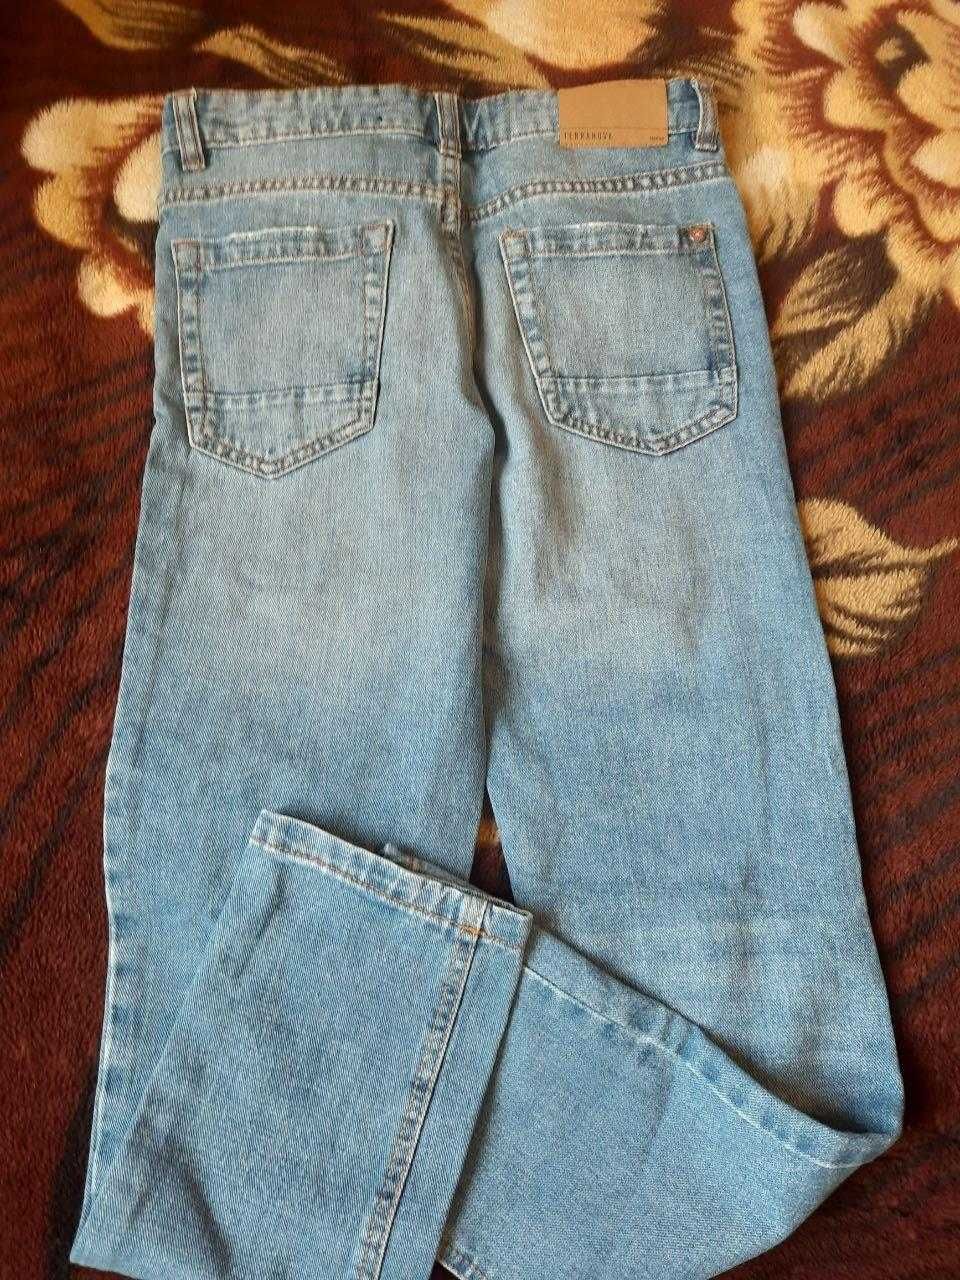 Сині джинси   "Terranova" для хлопчика 10-11 років; зріст 140-146 см.